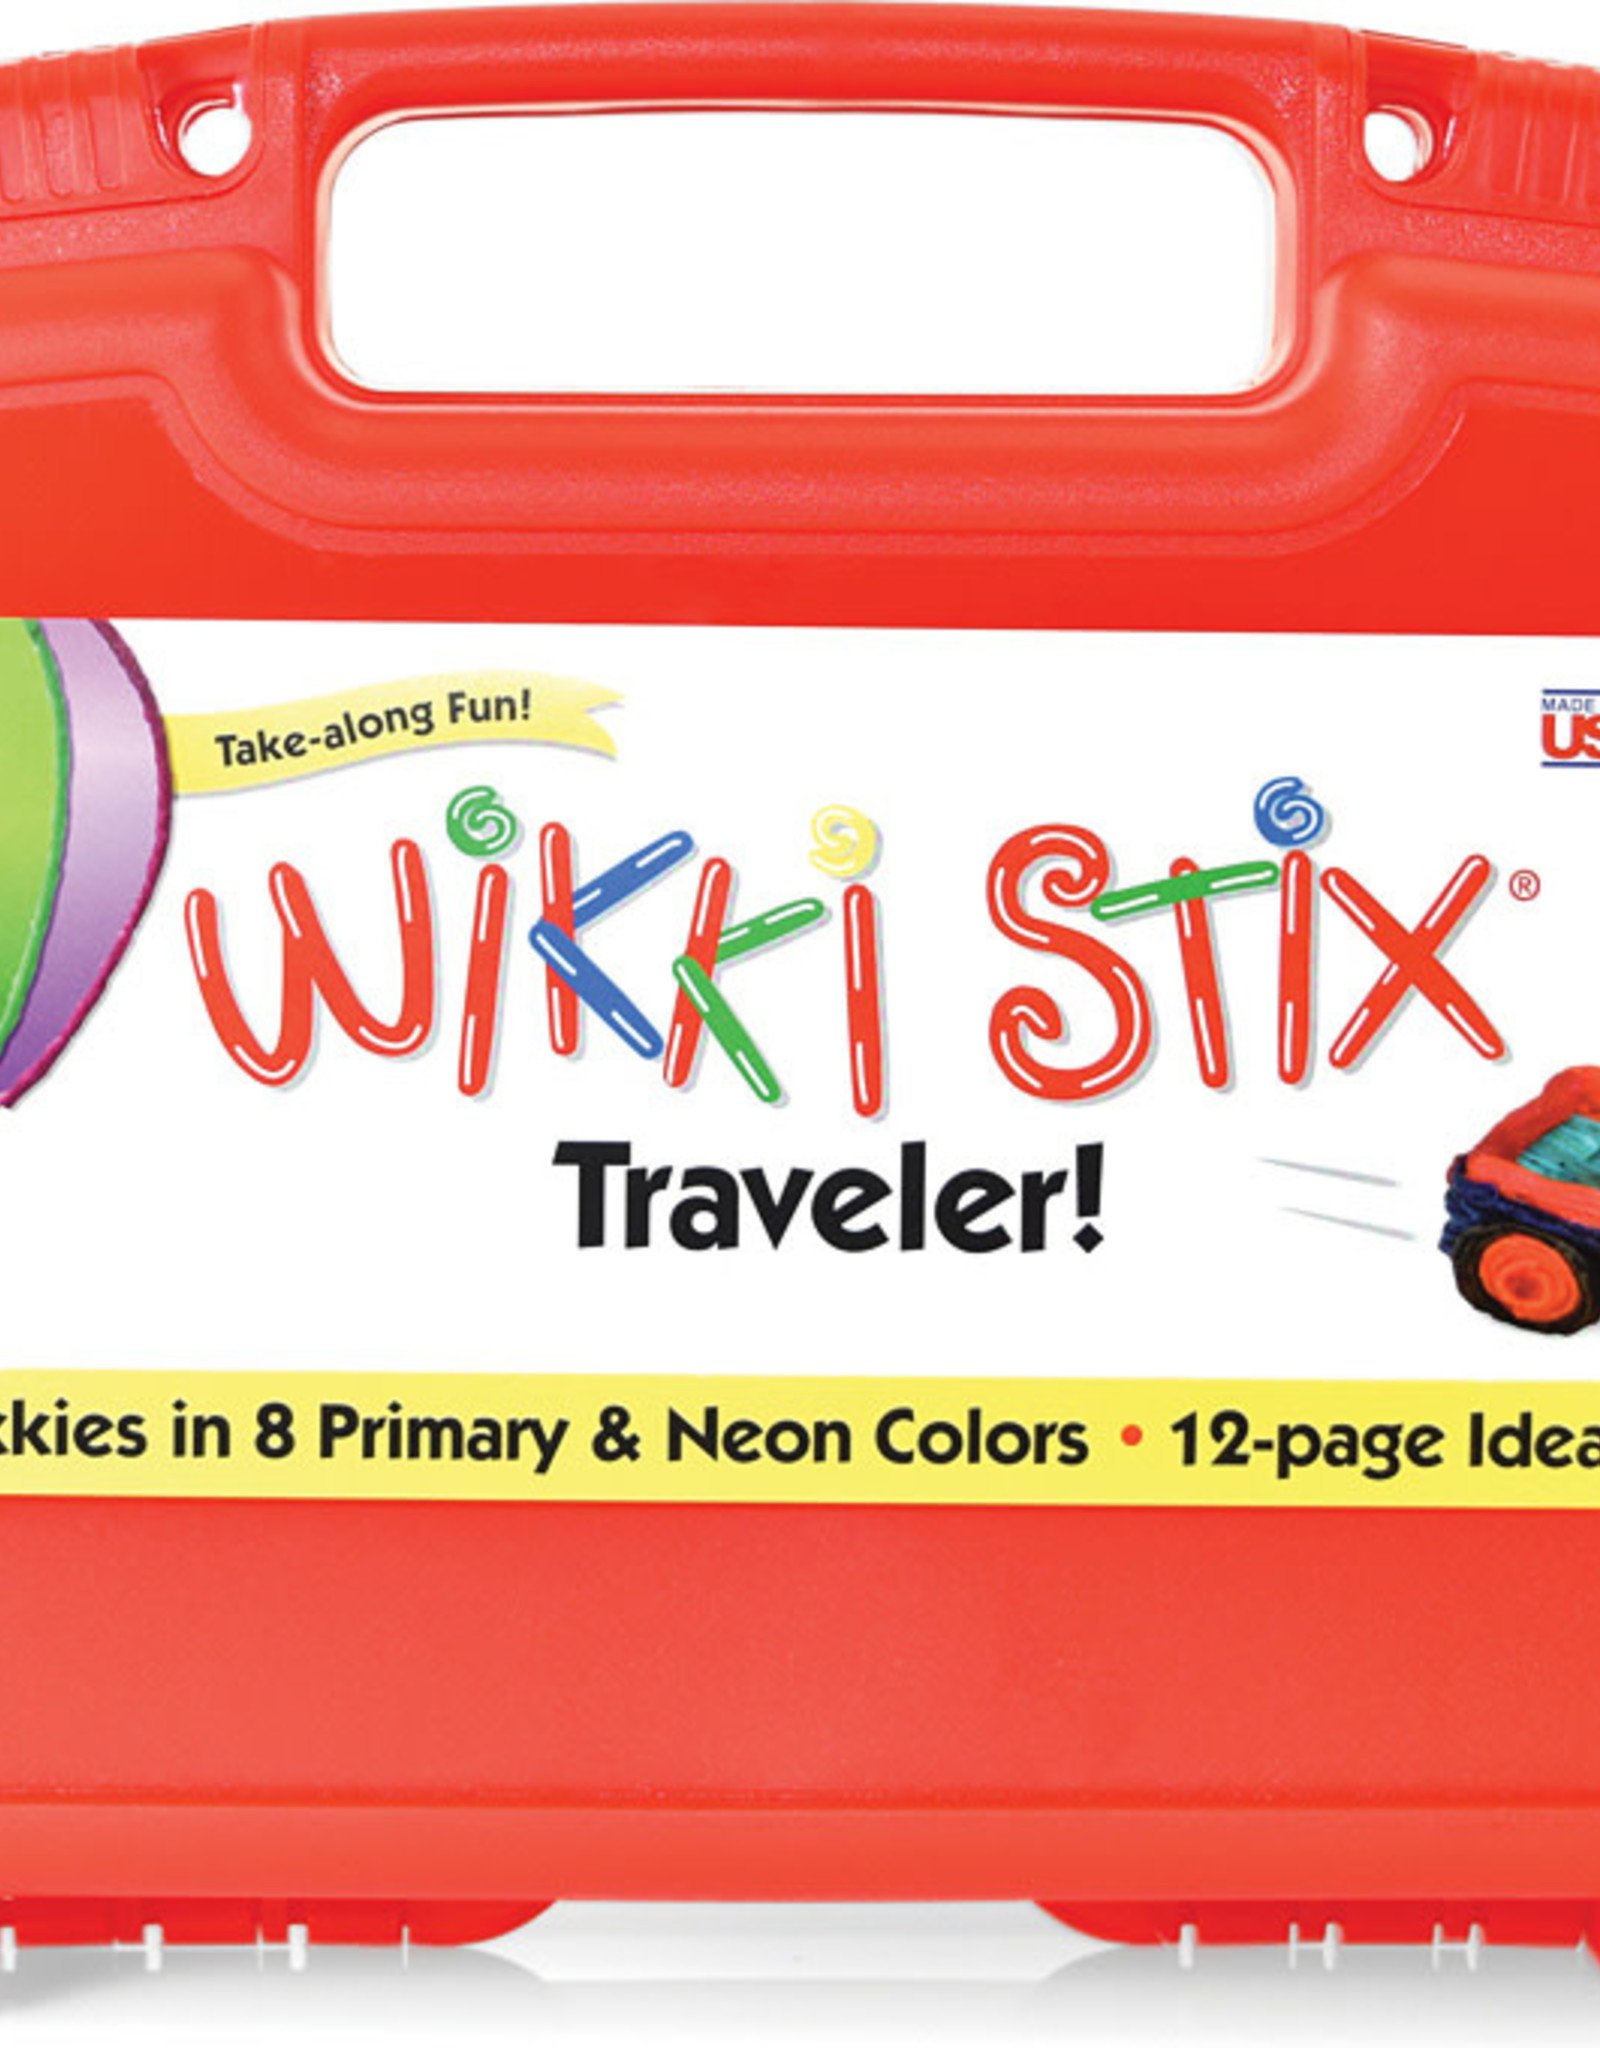 Wikki Stix Traveler, Kids Travel Essential, 144, Red Carrying Case